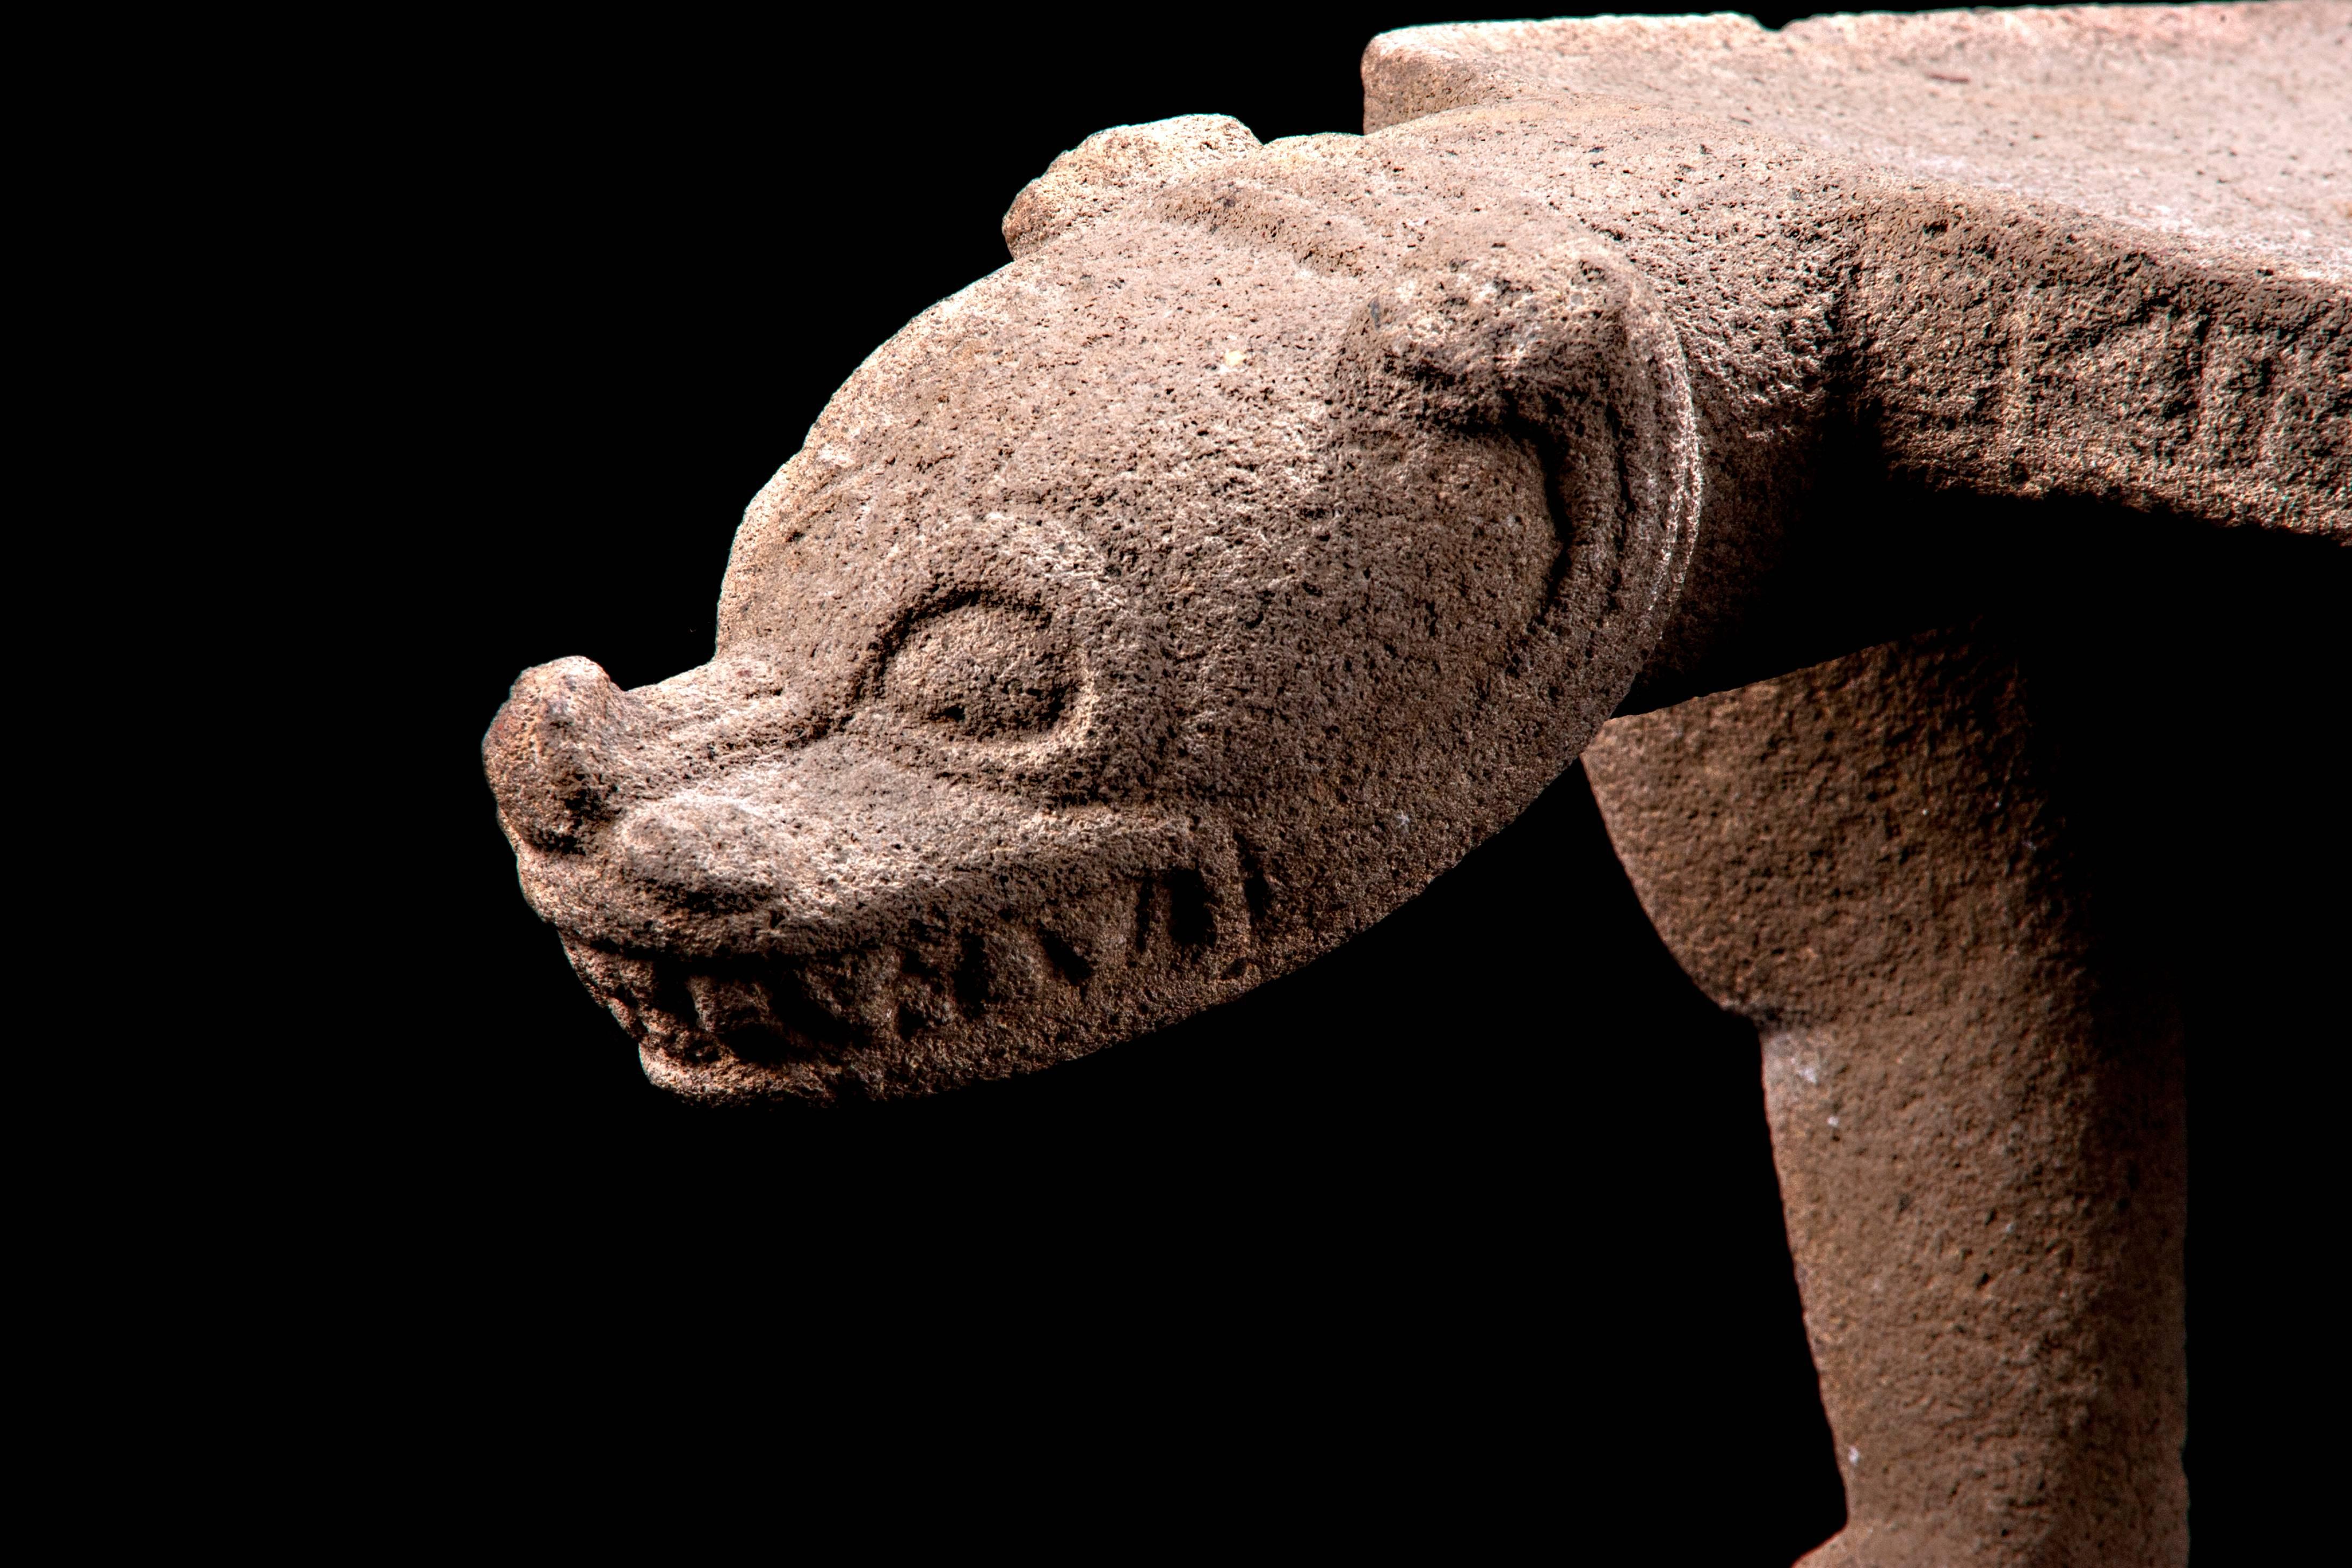 Nicoya Ceremonial Basaltstein Sitz in Form eines Jaguars. Veröffentlicht im Arizona Museum. 

Dieses große und fein geschnitzte Beispiel costa-ricanischer Kunstfertigkeit hat die Form eines Jaguars, der nach Ansicht der spanischen Conquistadoren des